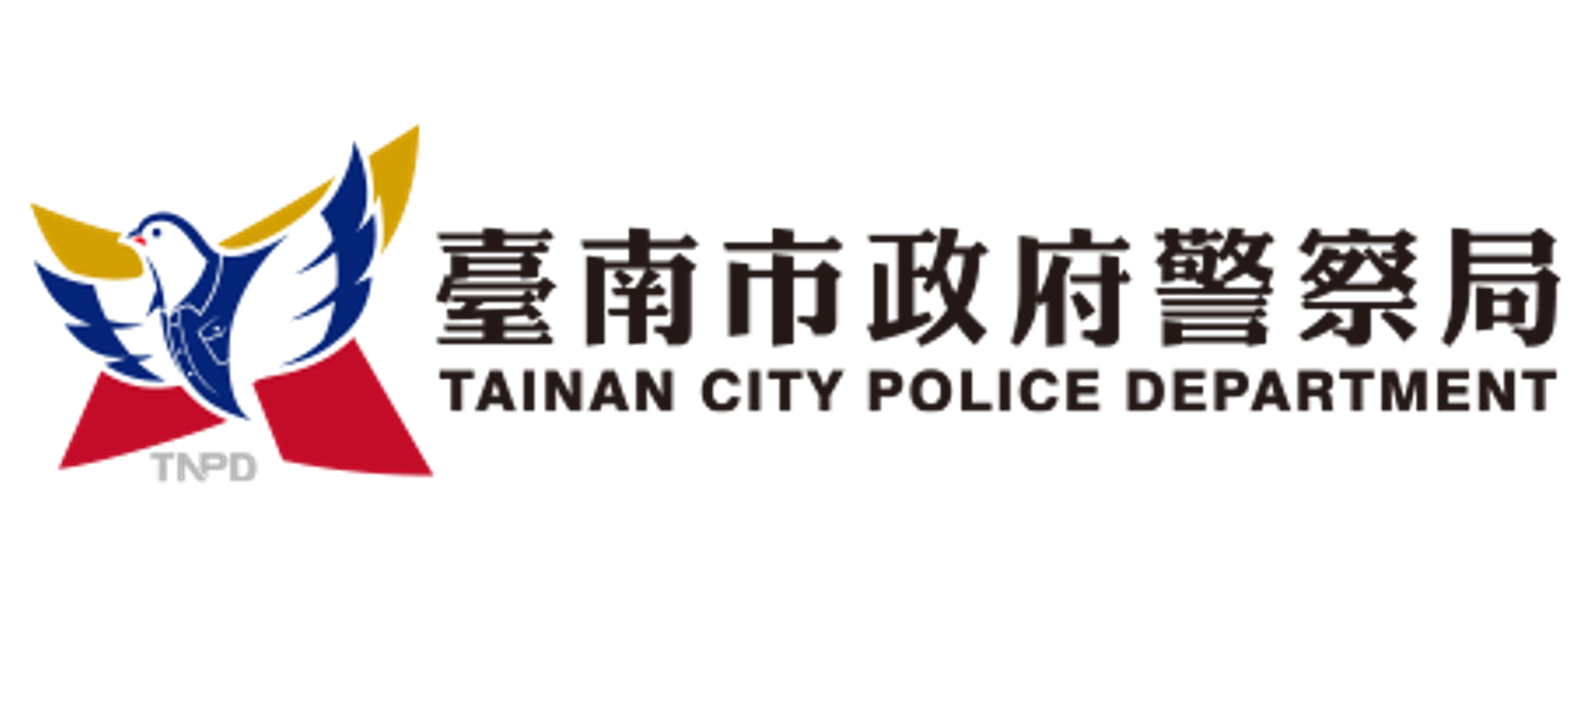 臺南市政府警察局